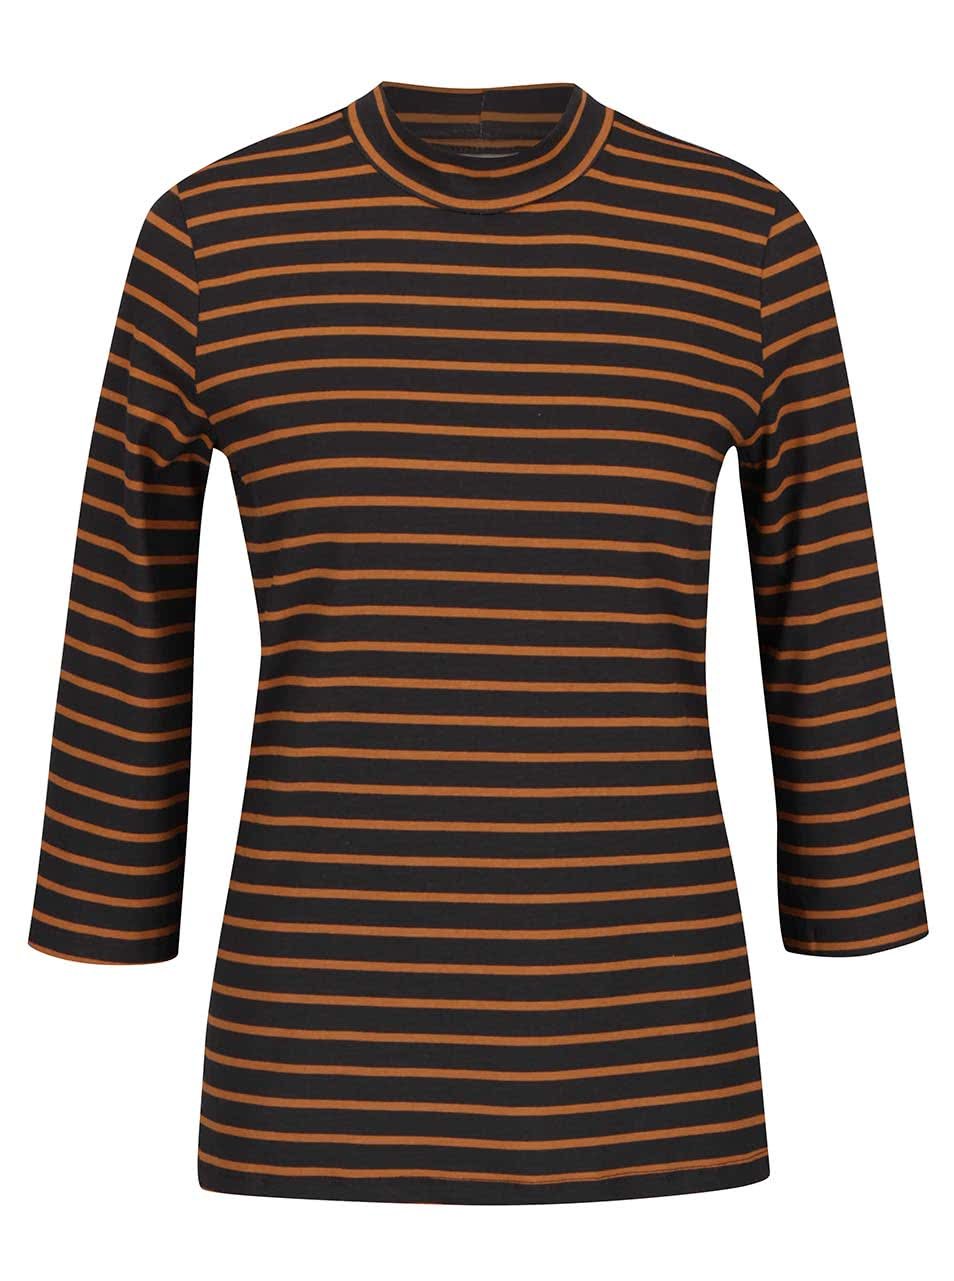 Oranžovo-šedé pruhované tričko s 3/4 rukávy Vero Moda Sailor